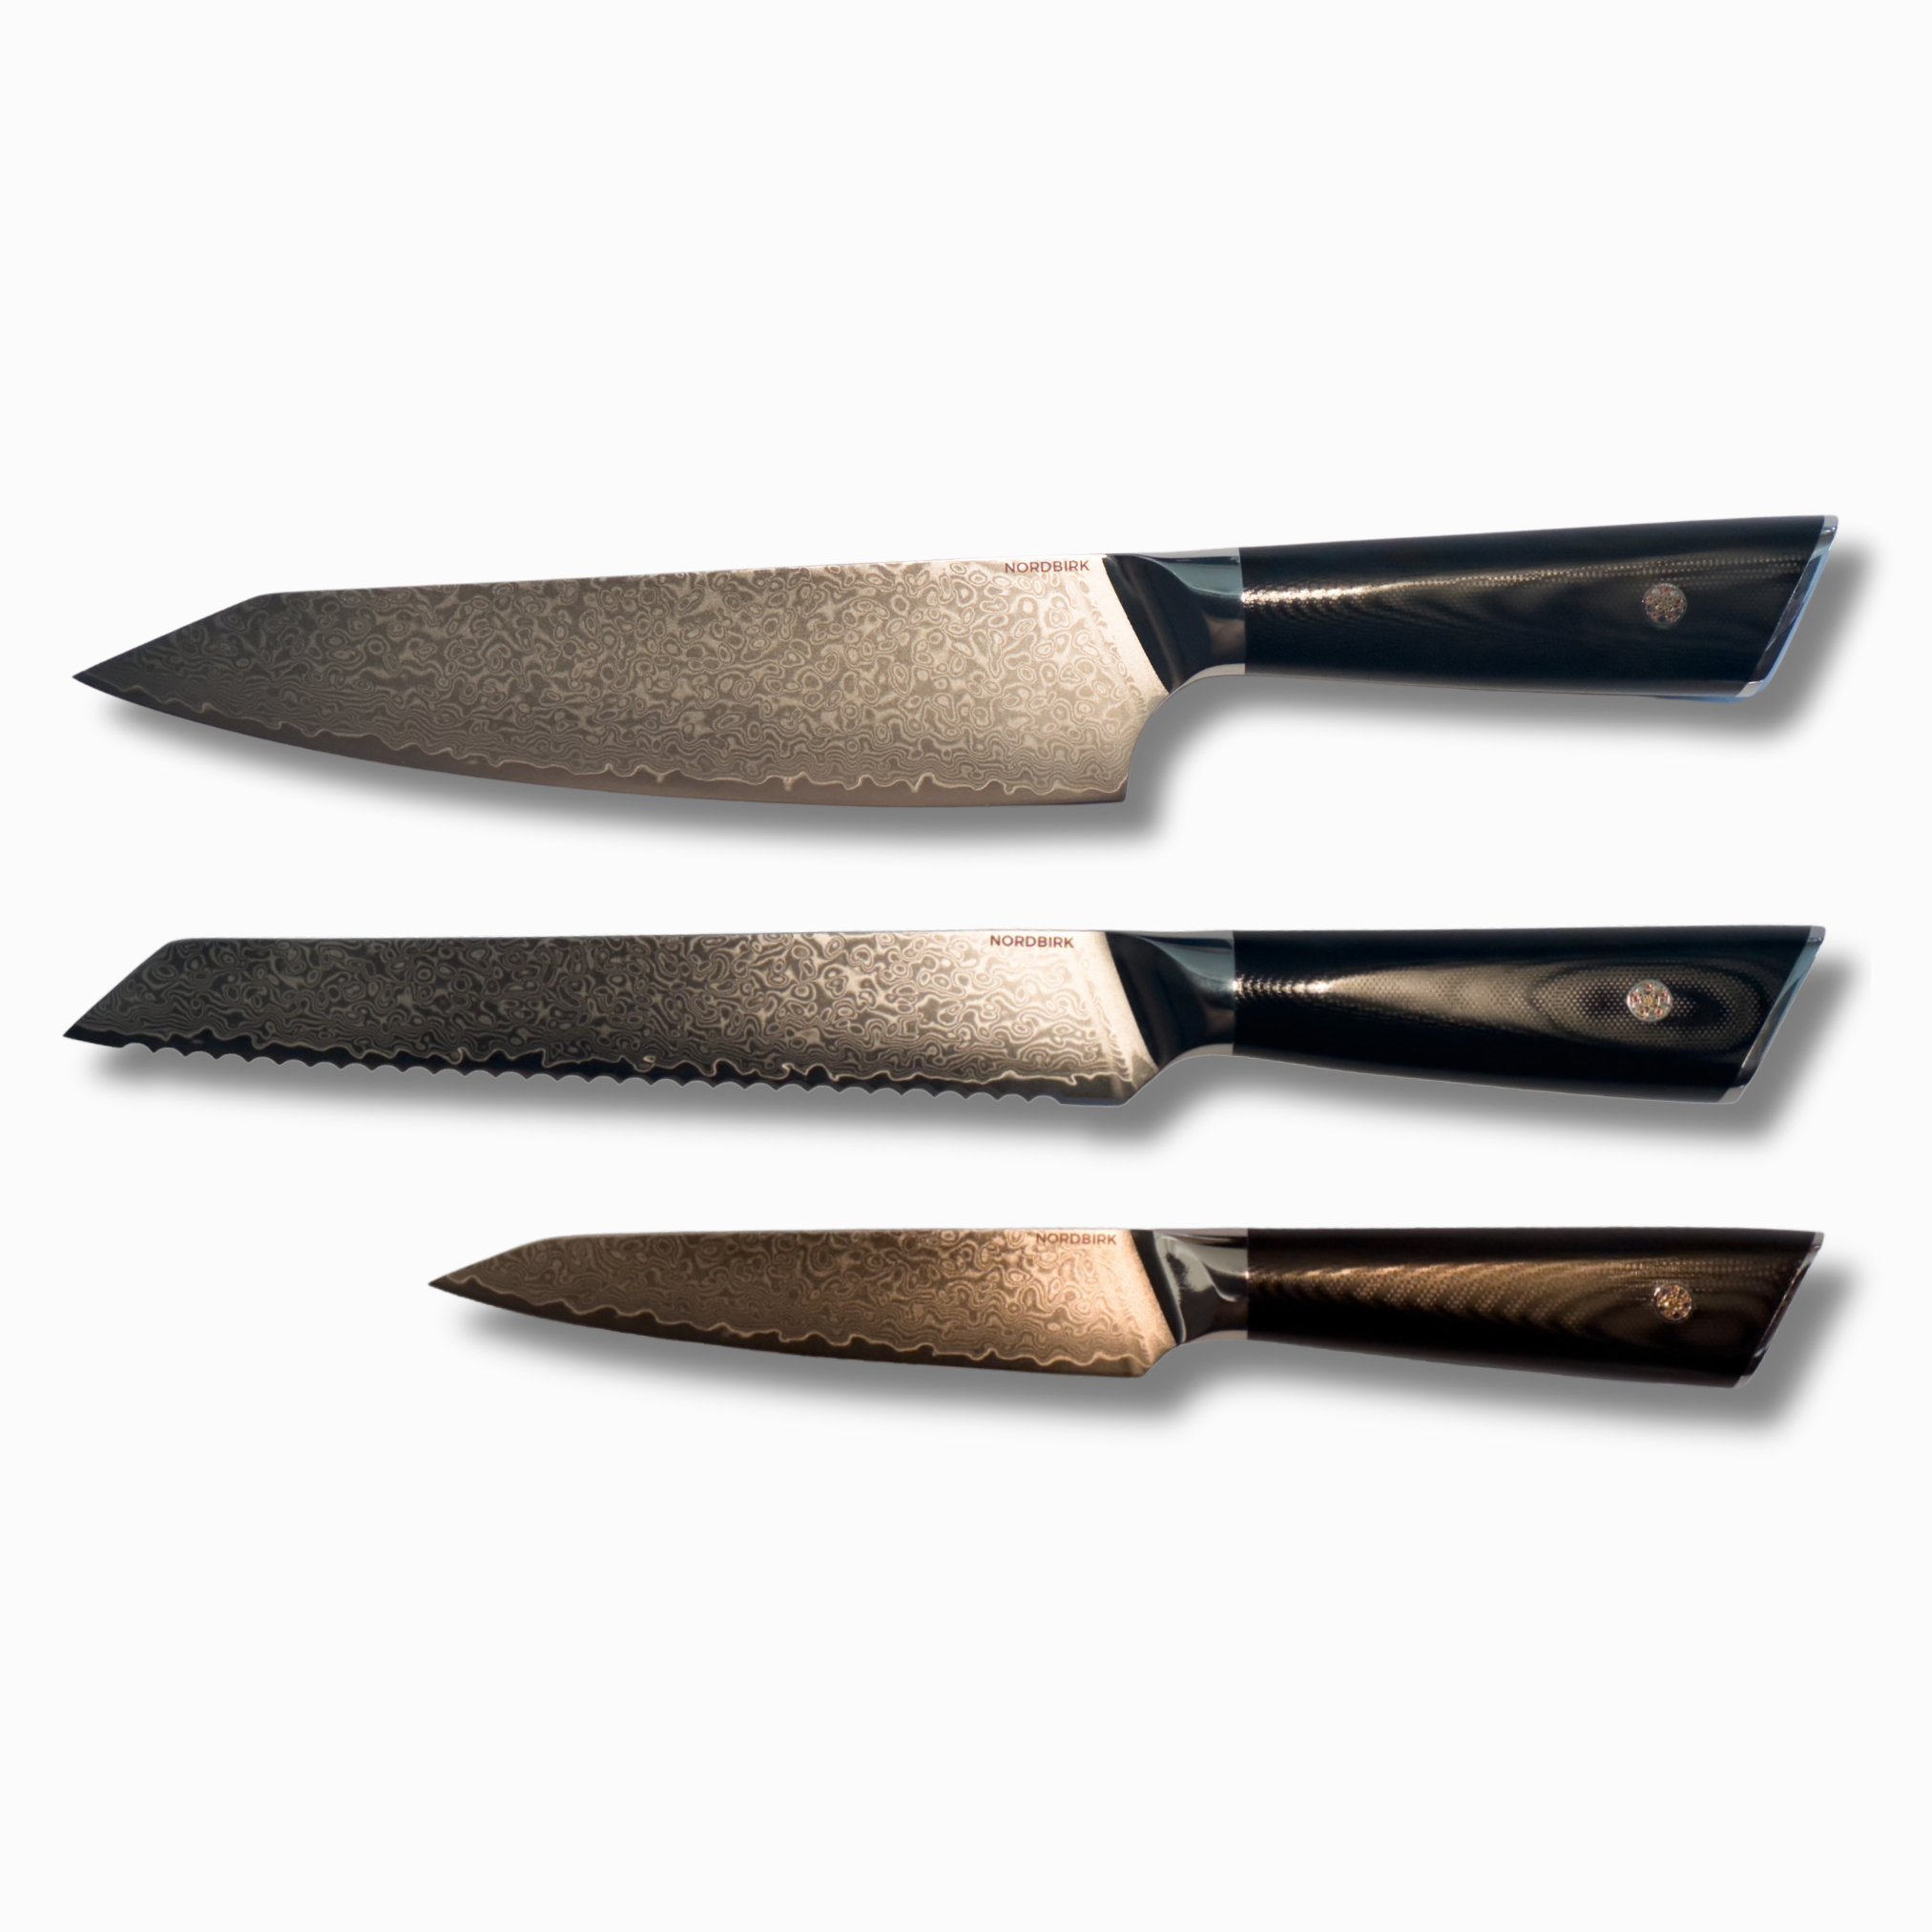 De essentielle, Black edition: Uundværlige knive til dit køkken